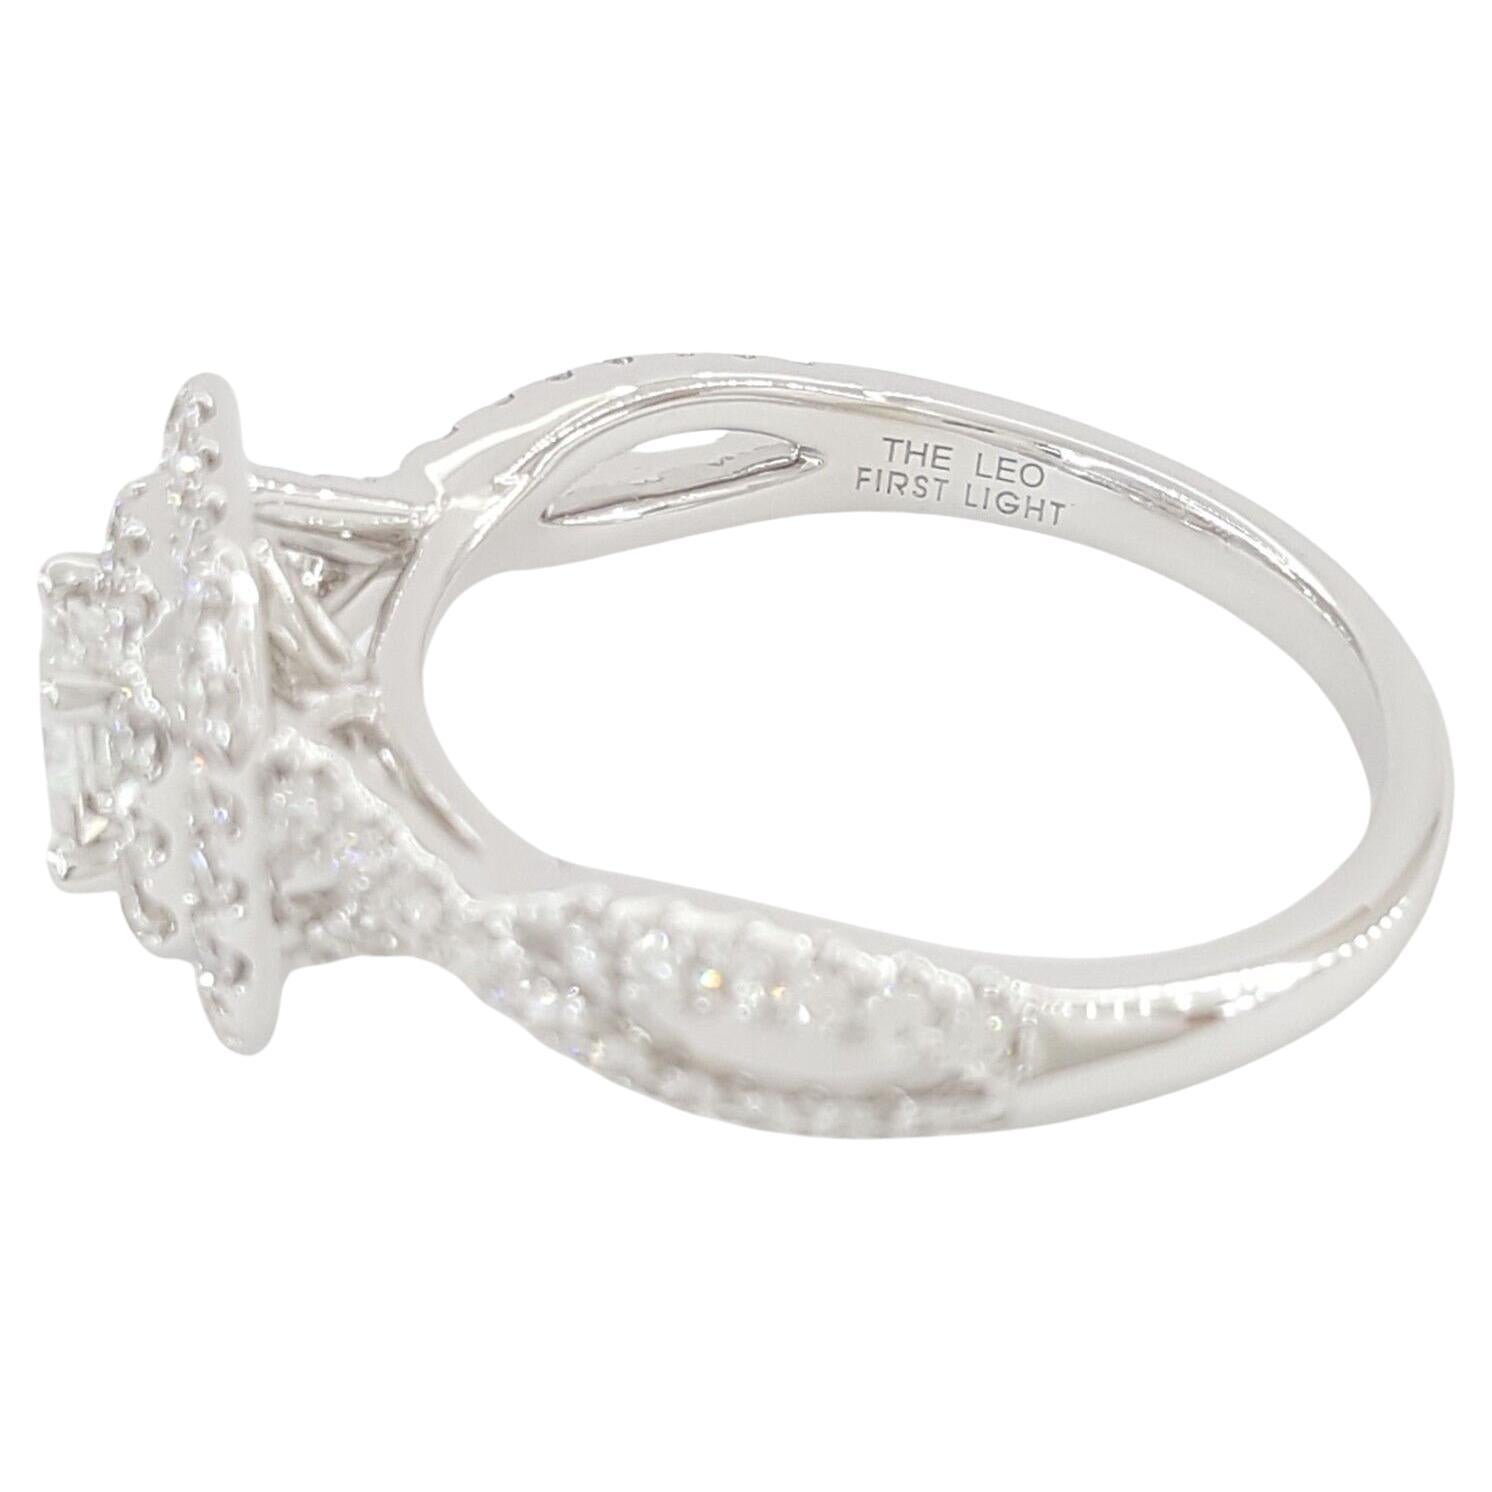  Bague de fiançailles Leo First Light Diamond, un symbole exquis d'amour et d'engagement.

Réalisée en luxueux or blanc 14k, cette bague enchanteresse affiche un poids total de 7/8 carats, promettant une élégance et une sophistication intemporelles.